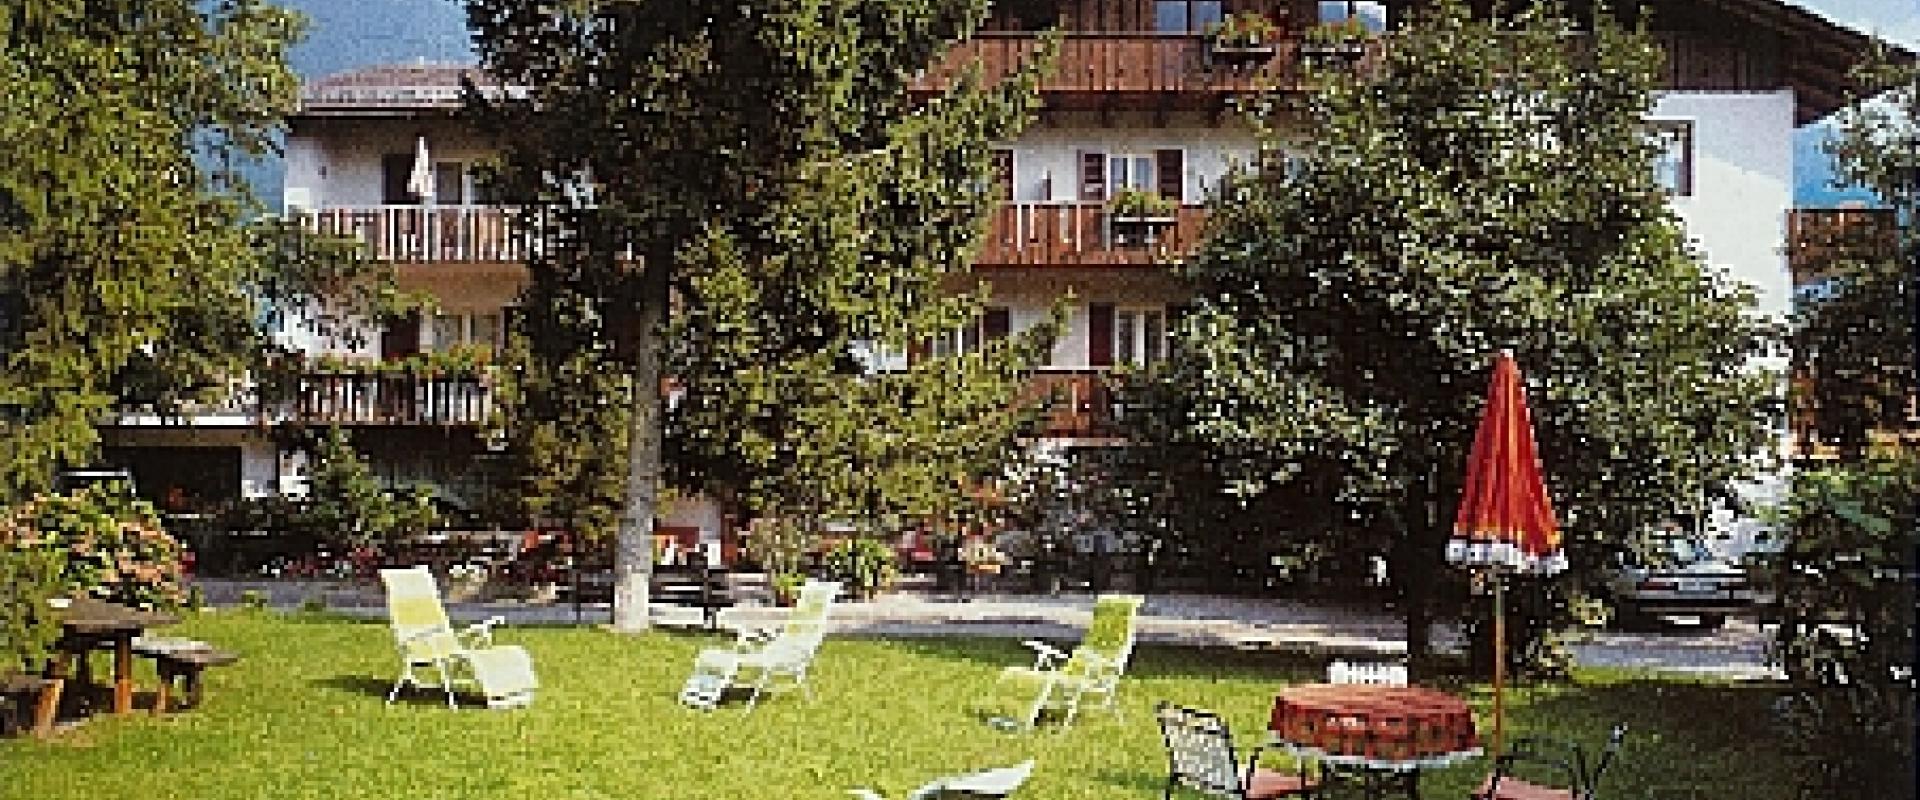 20780 Biker Hotel Garni Franz Leiter in Südtirol/Dolomiten.jpg